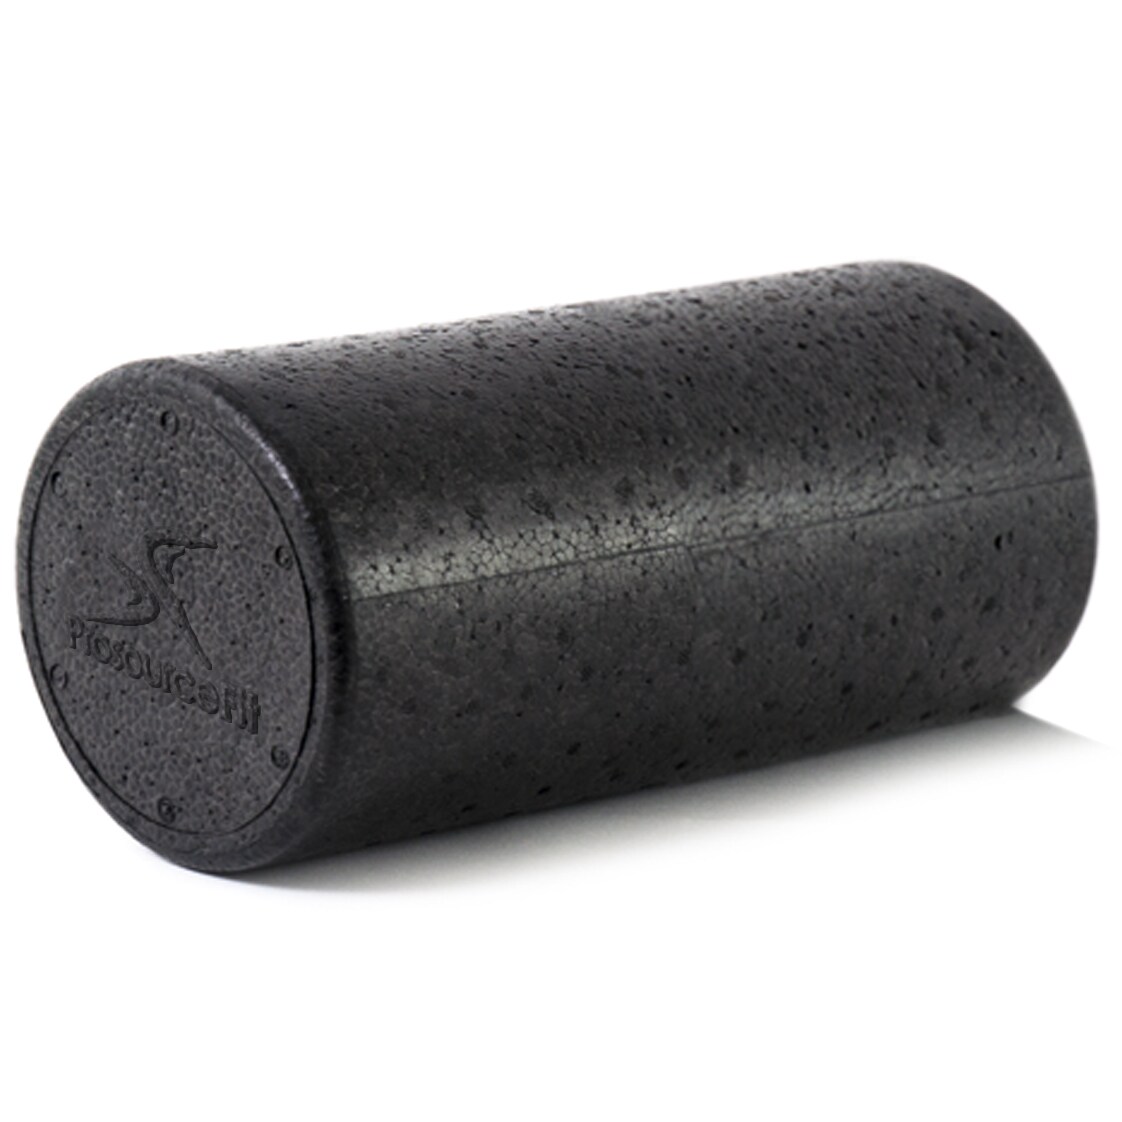 Black 12" Yogu Foam Roller EPP High Density Extra Firm 